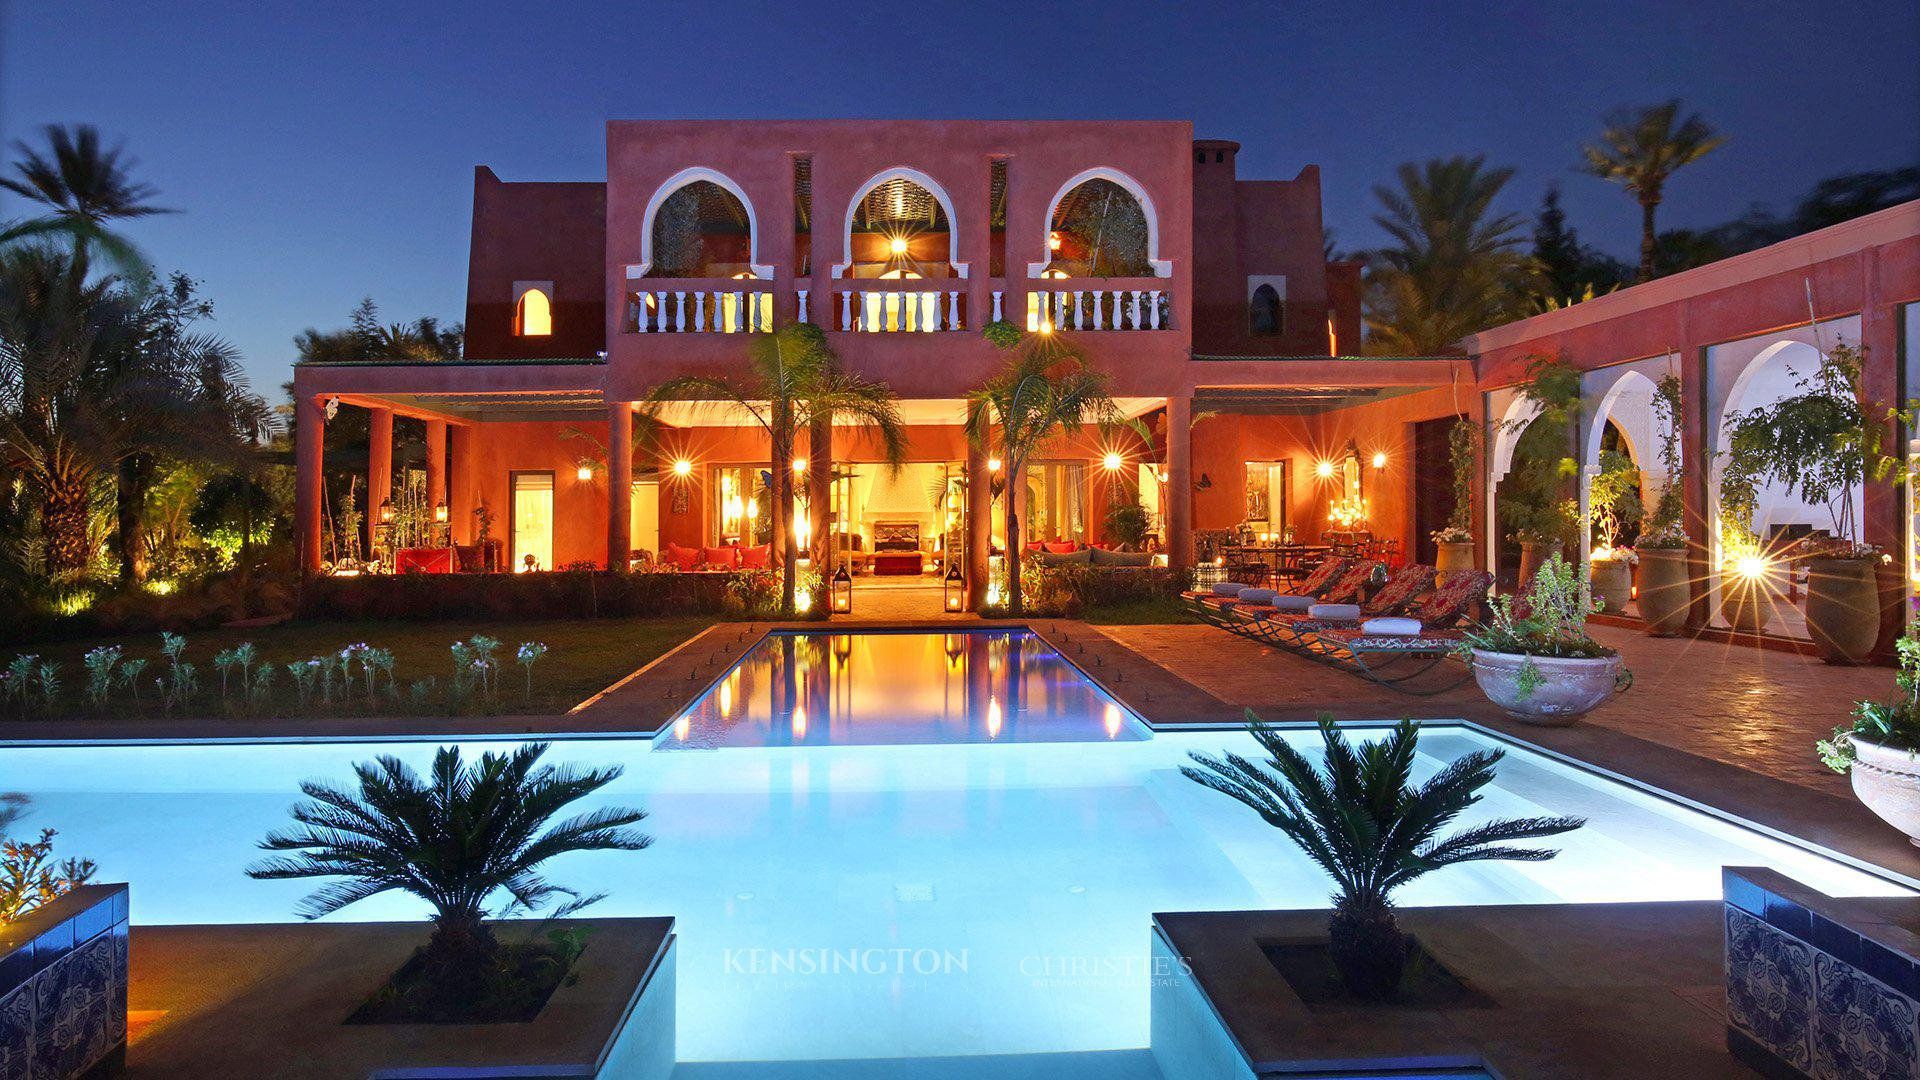 Trouvez la villa de vos rêves à Marrakech avec l'aide d'une agence immobilière spécialisée